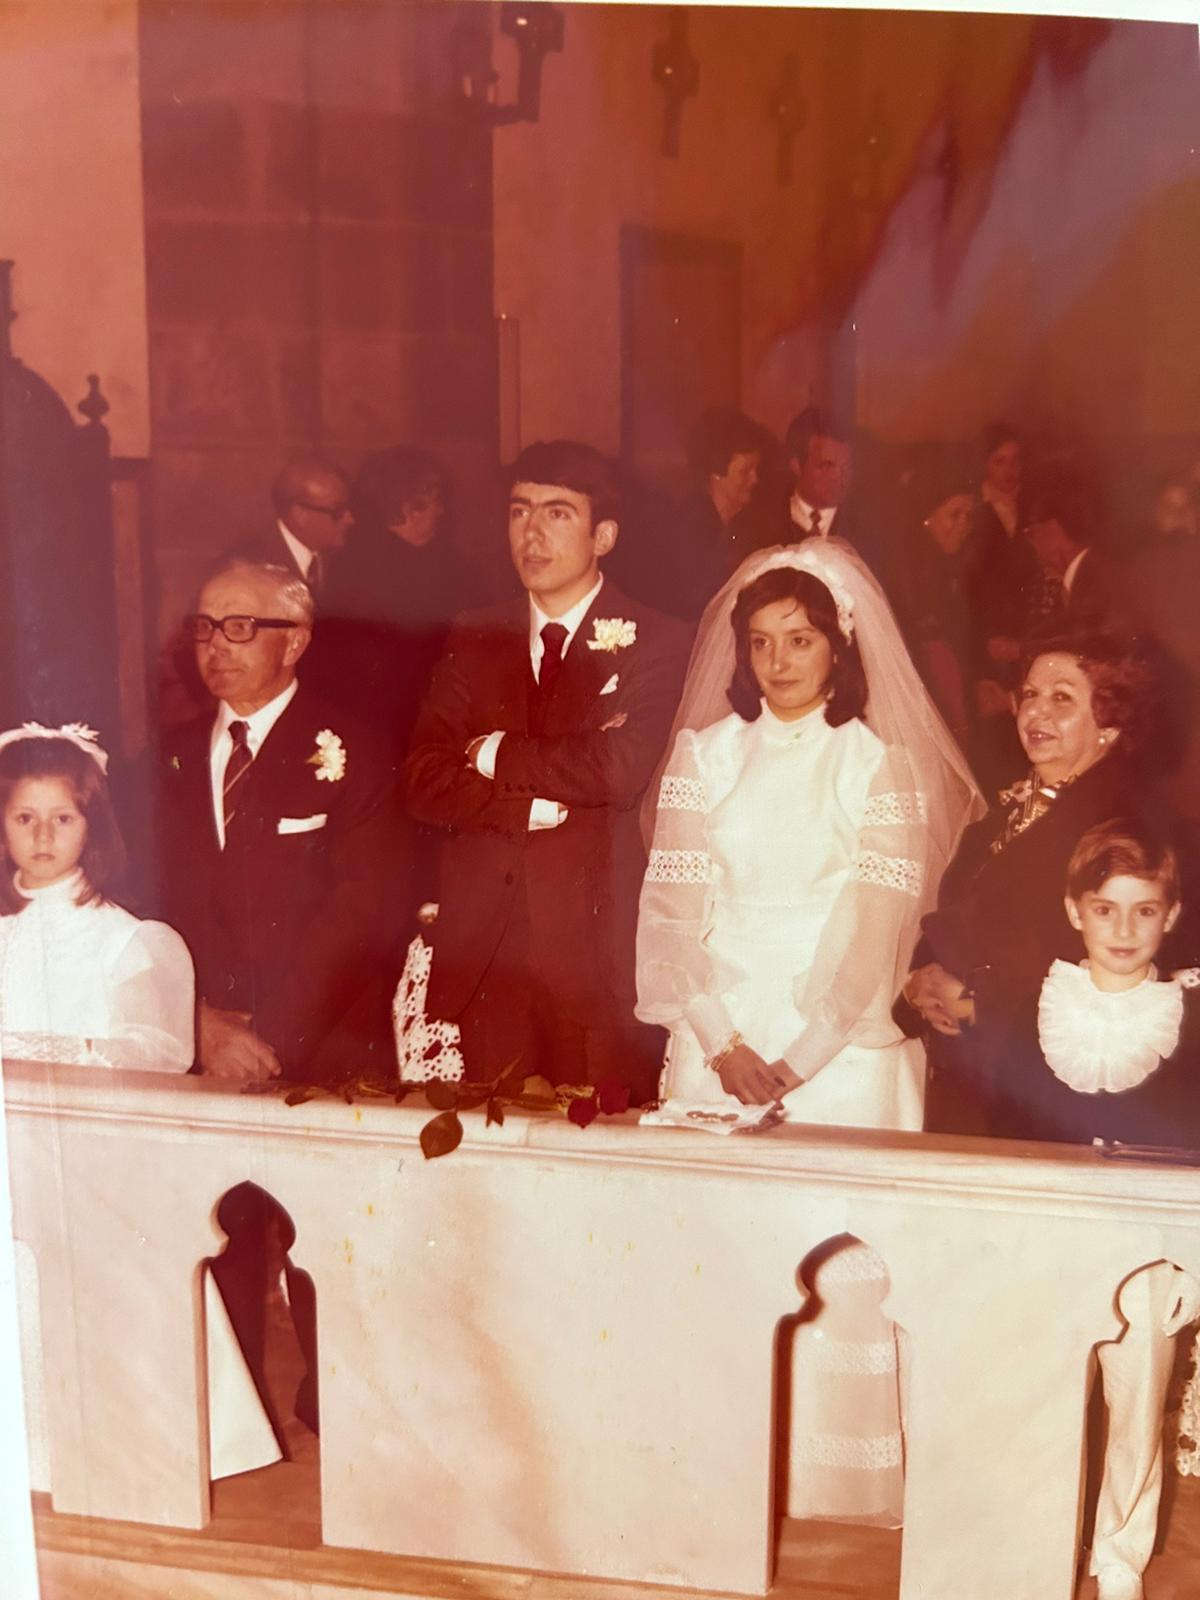 La boda fue celebrada en la Iglesia Parroquial de Pontecesures hace 50 años